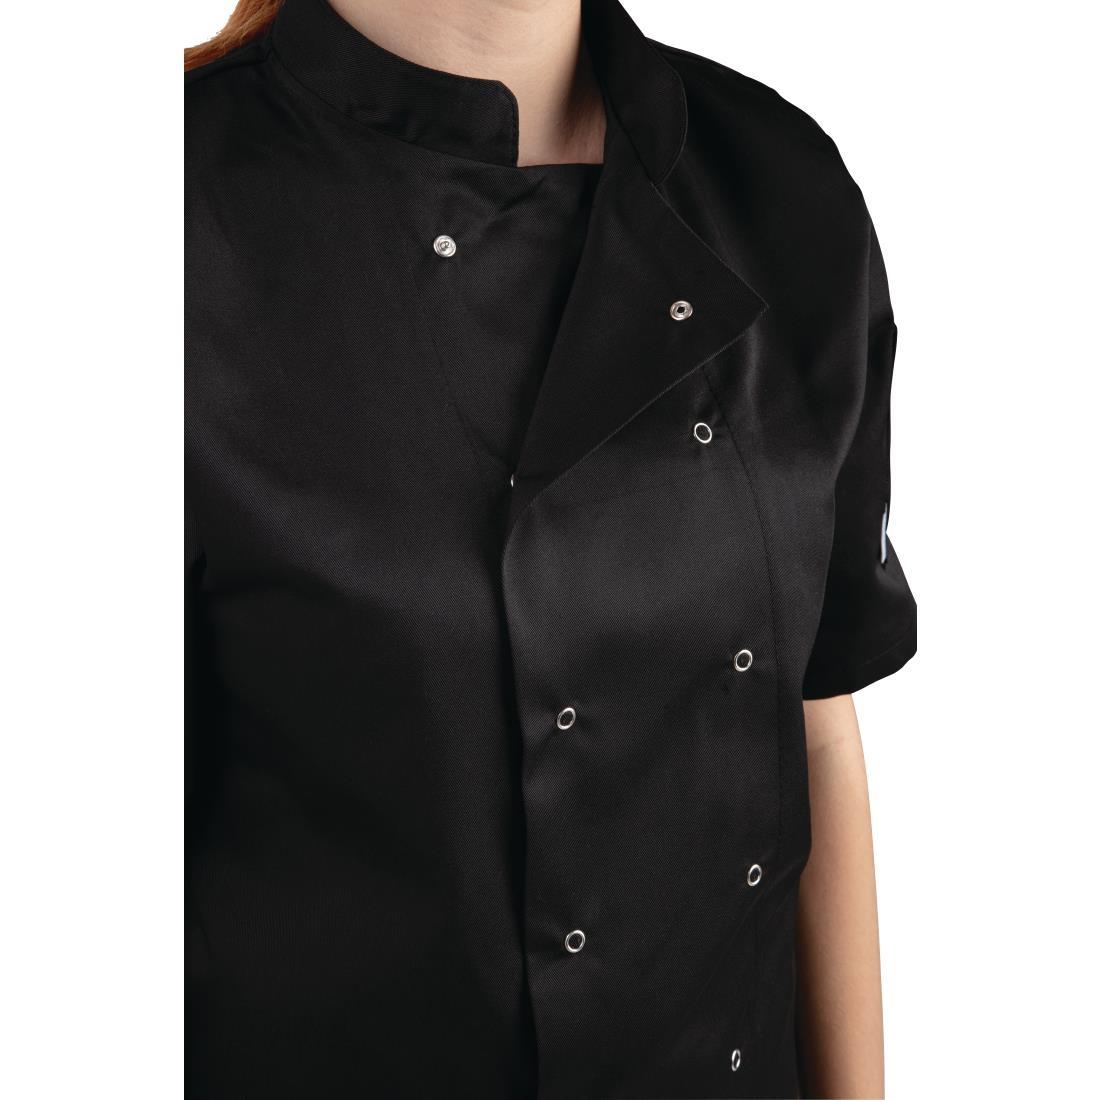 Whites Vegas Unisex Chefs Jacket Short Sleeve Black 3XL - A439-3XL  - 2